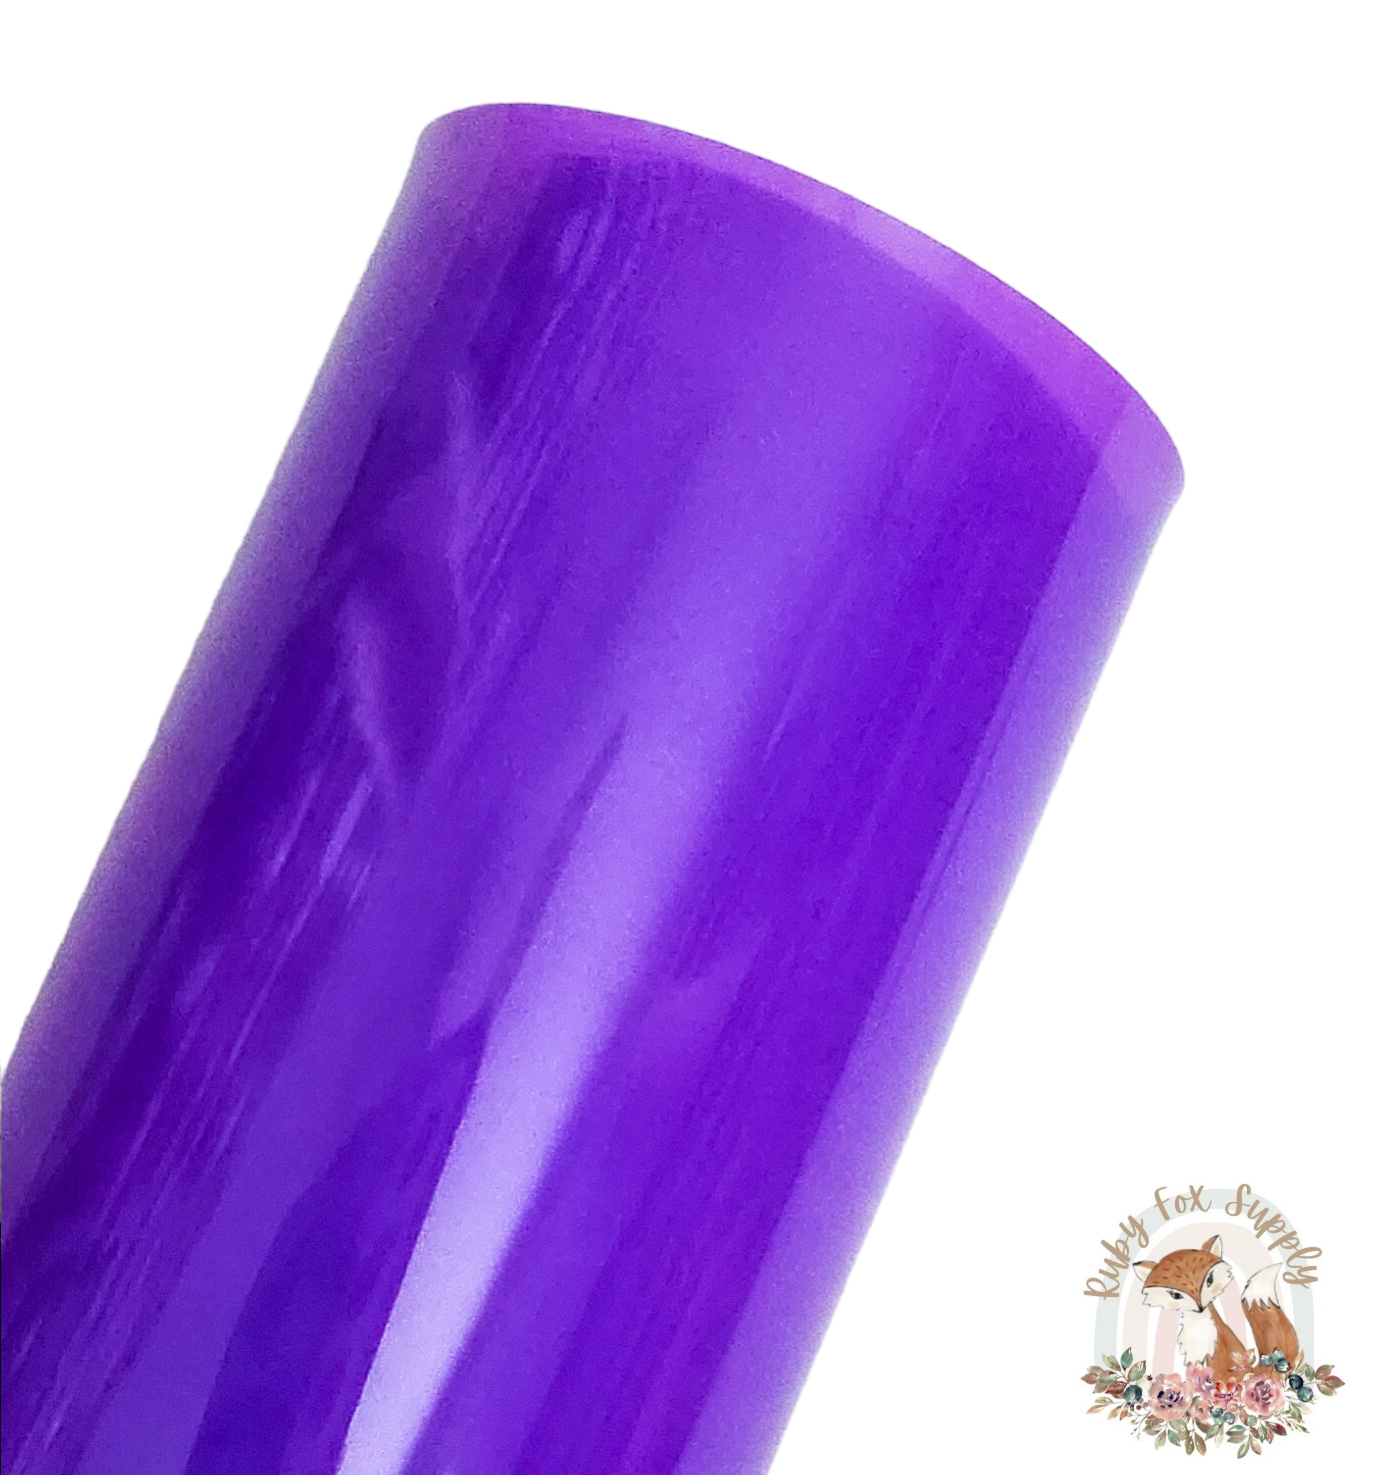 Purple Jelly sheet